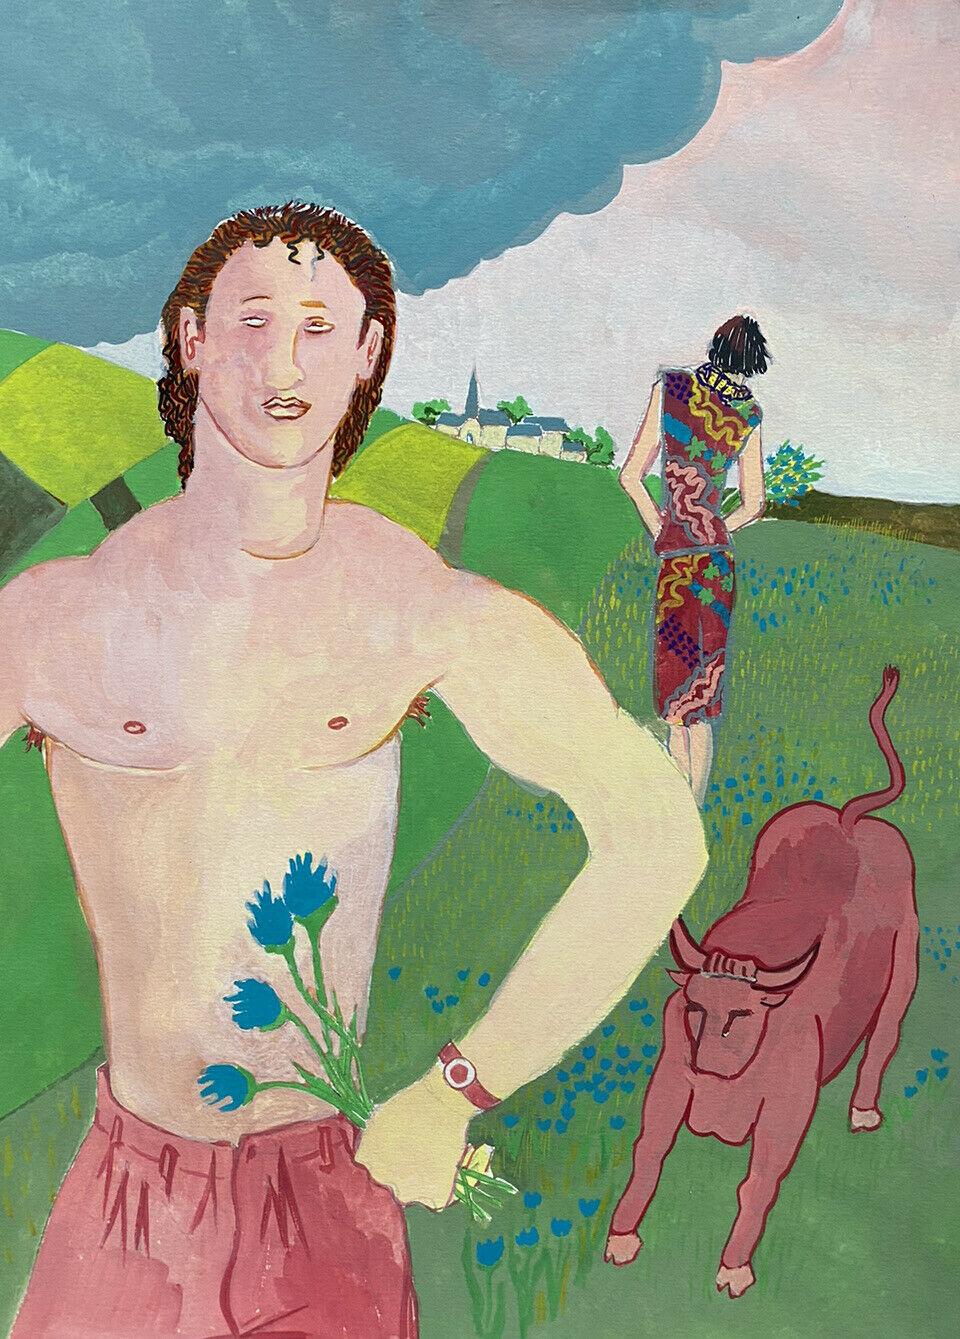 HOMME SEMI-NU avec taureau dans un paysage - PEINTURE MODERNISTE FRANÇAISE DU 20e SIÈCLE - Painting de Jean Marc